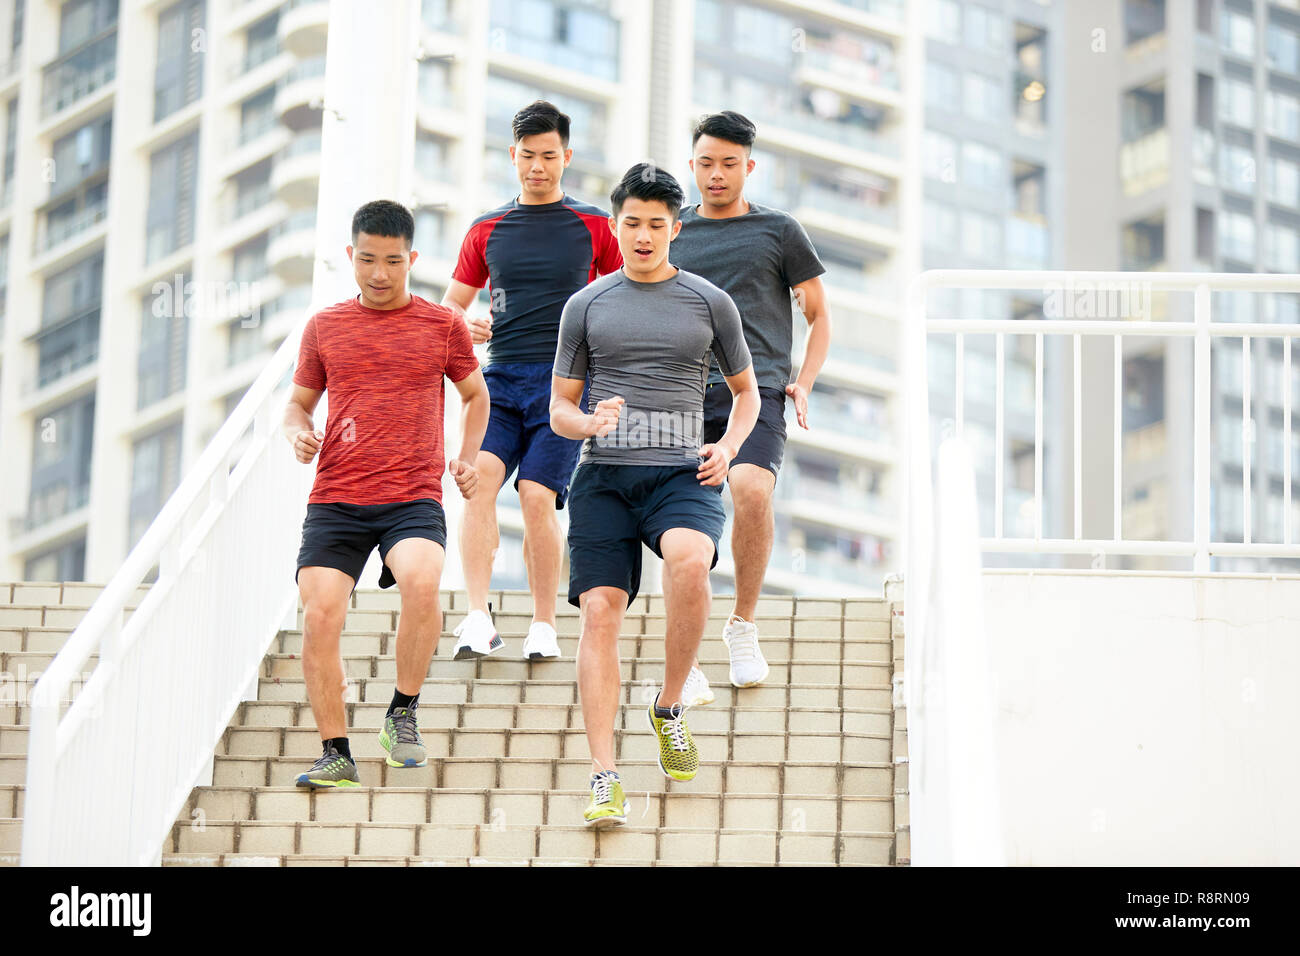 Los jóvenes hombres asiáticos entrenamiento running en pasos al aire libre. Foto de stock